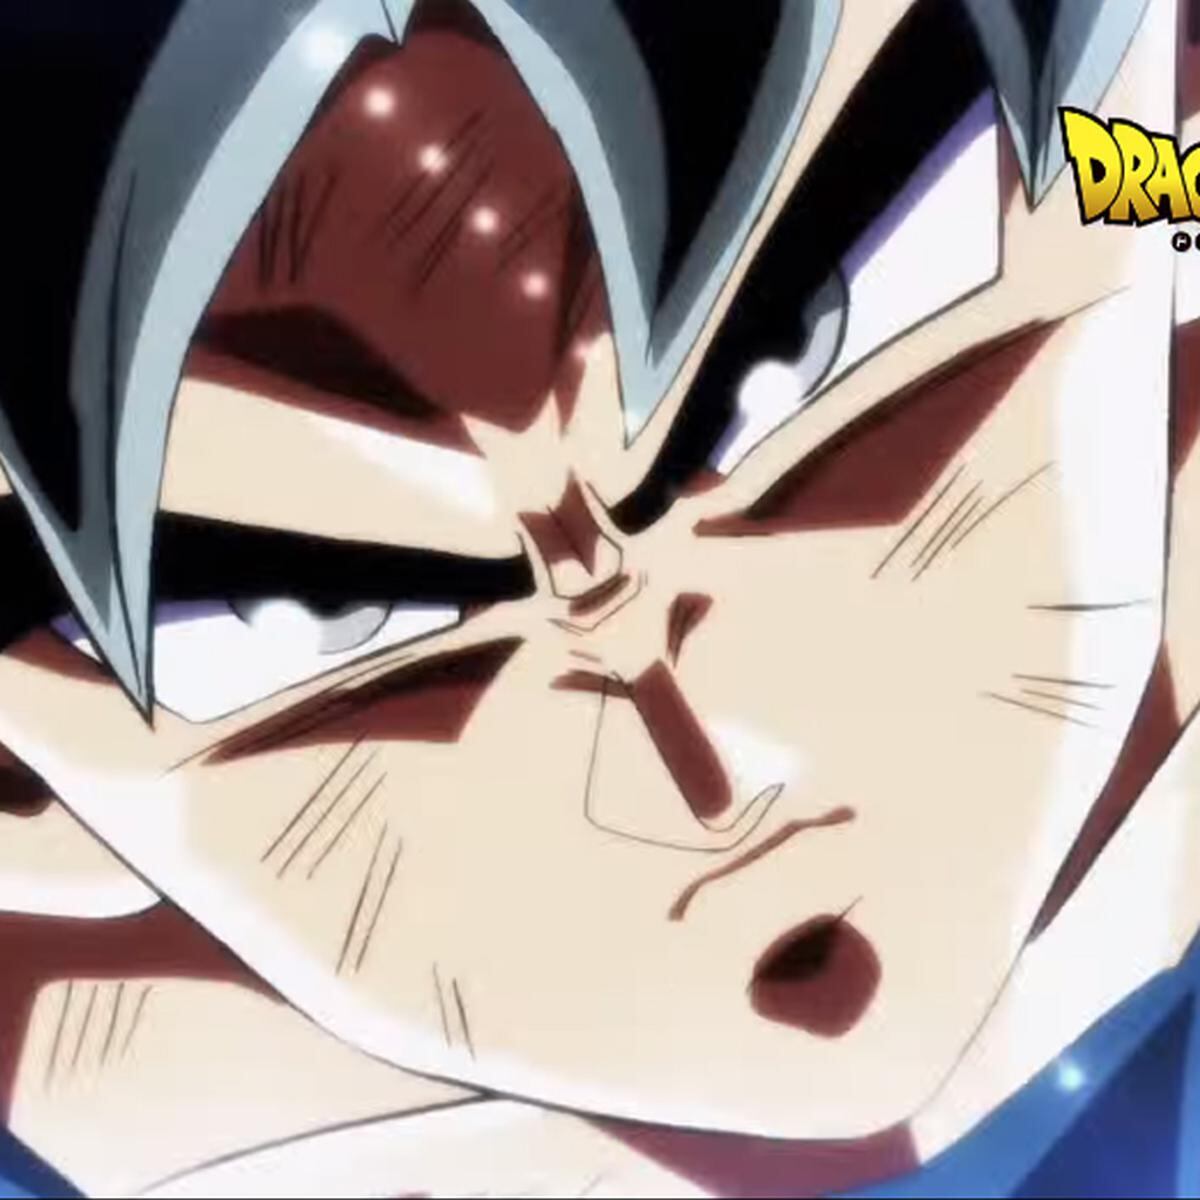 Dragon Ball Super 129 ONLINE: Goku vs. Jiren lucharon con su máximo poder  [VIDEO] | DEPOR-PLAY | DEPOR